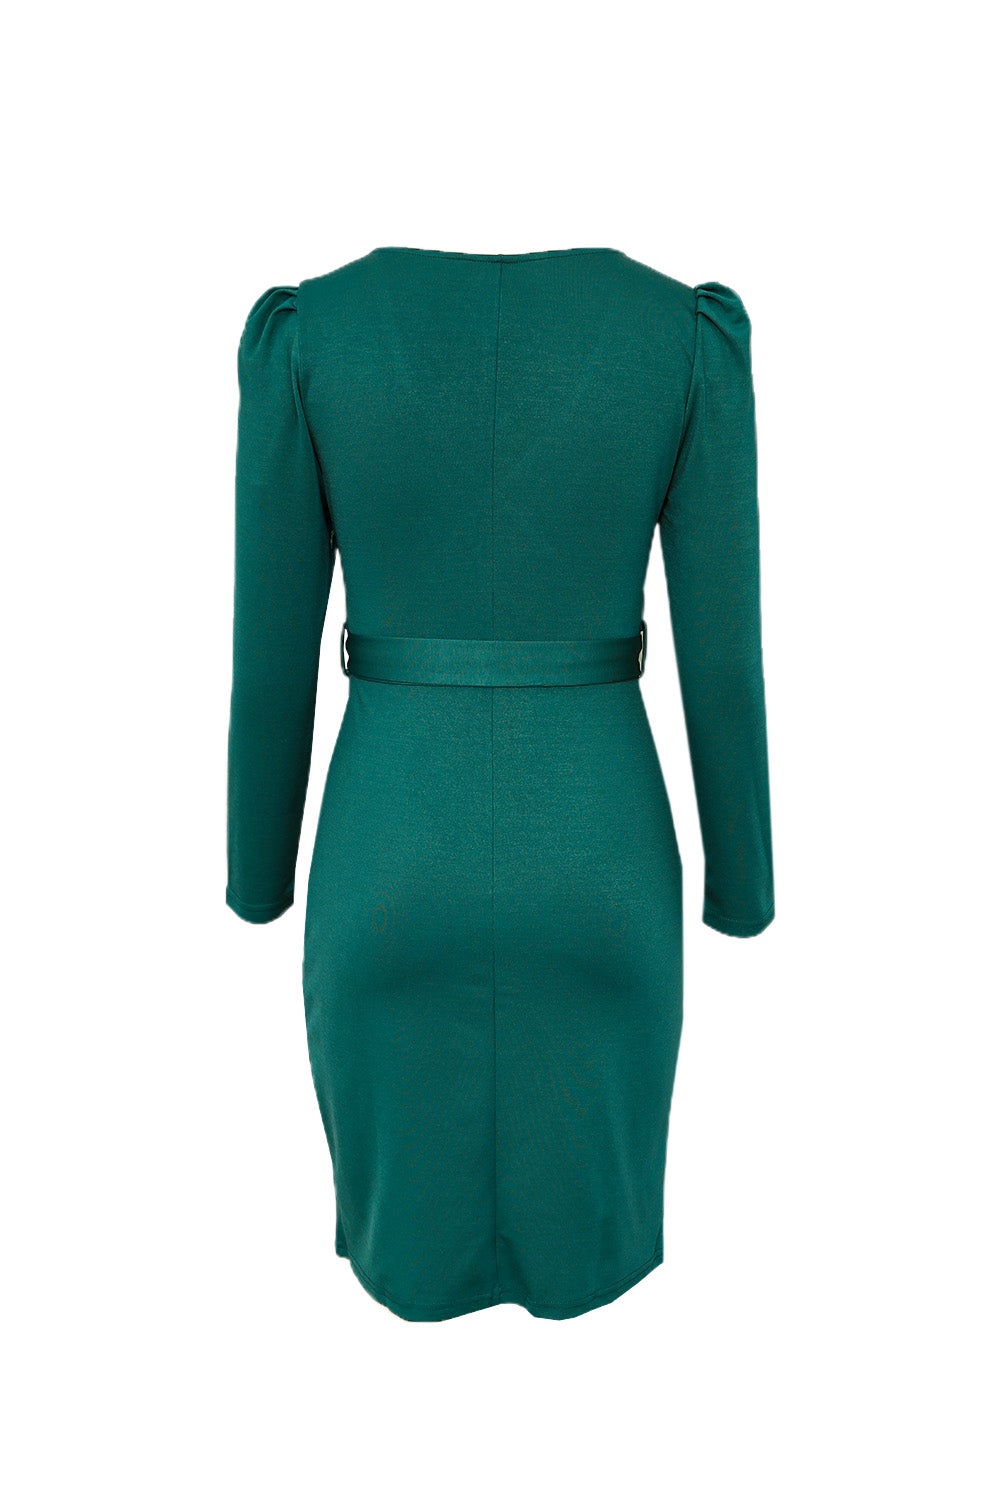 ΑΜΕΣΑ ΔΙΑΘΕΣΙΜΟ: πράσινο μίντι εφαρμοστό φόρεμα με ζώνη και V ντεκολτέ ALESIA GREEN